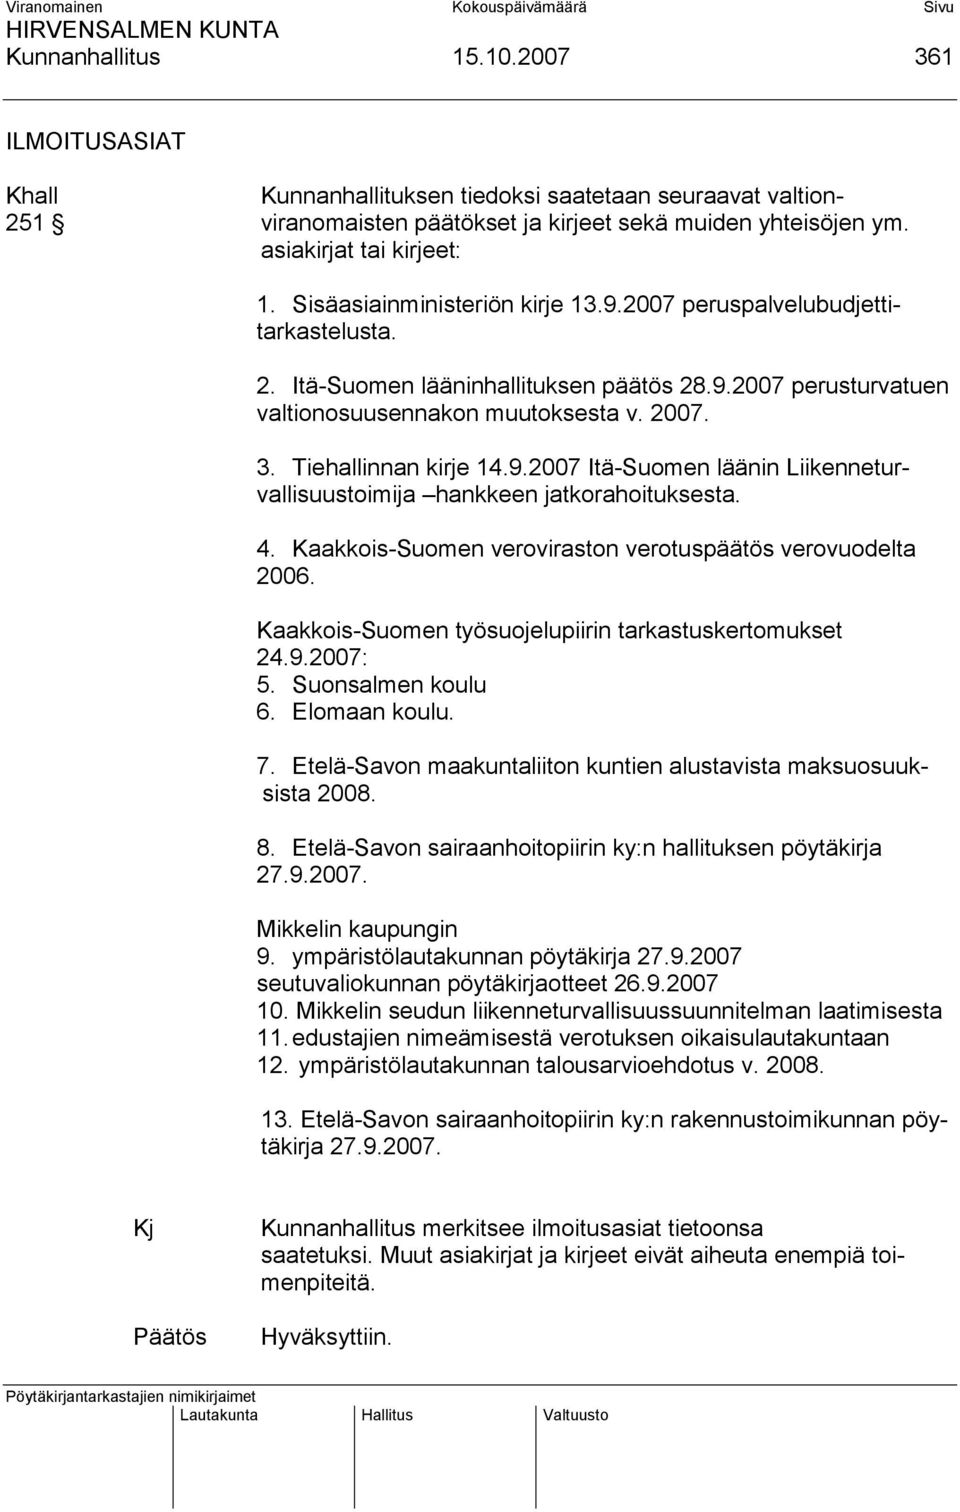 Tiehallinnan kirje 14.9.2007 Itä-Suomen läänin Liikenneturvallisuustoimija hankkeen jatkorahoituksesta. 4. Kaakkois-Suomen veroviraston verotuspäätös verovuodelta 2006.